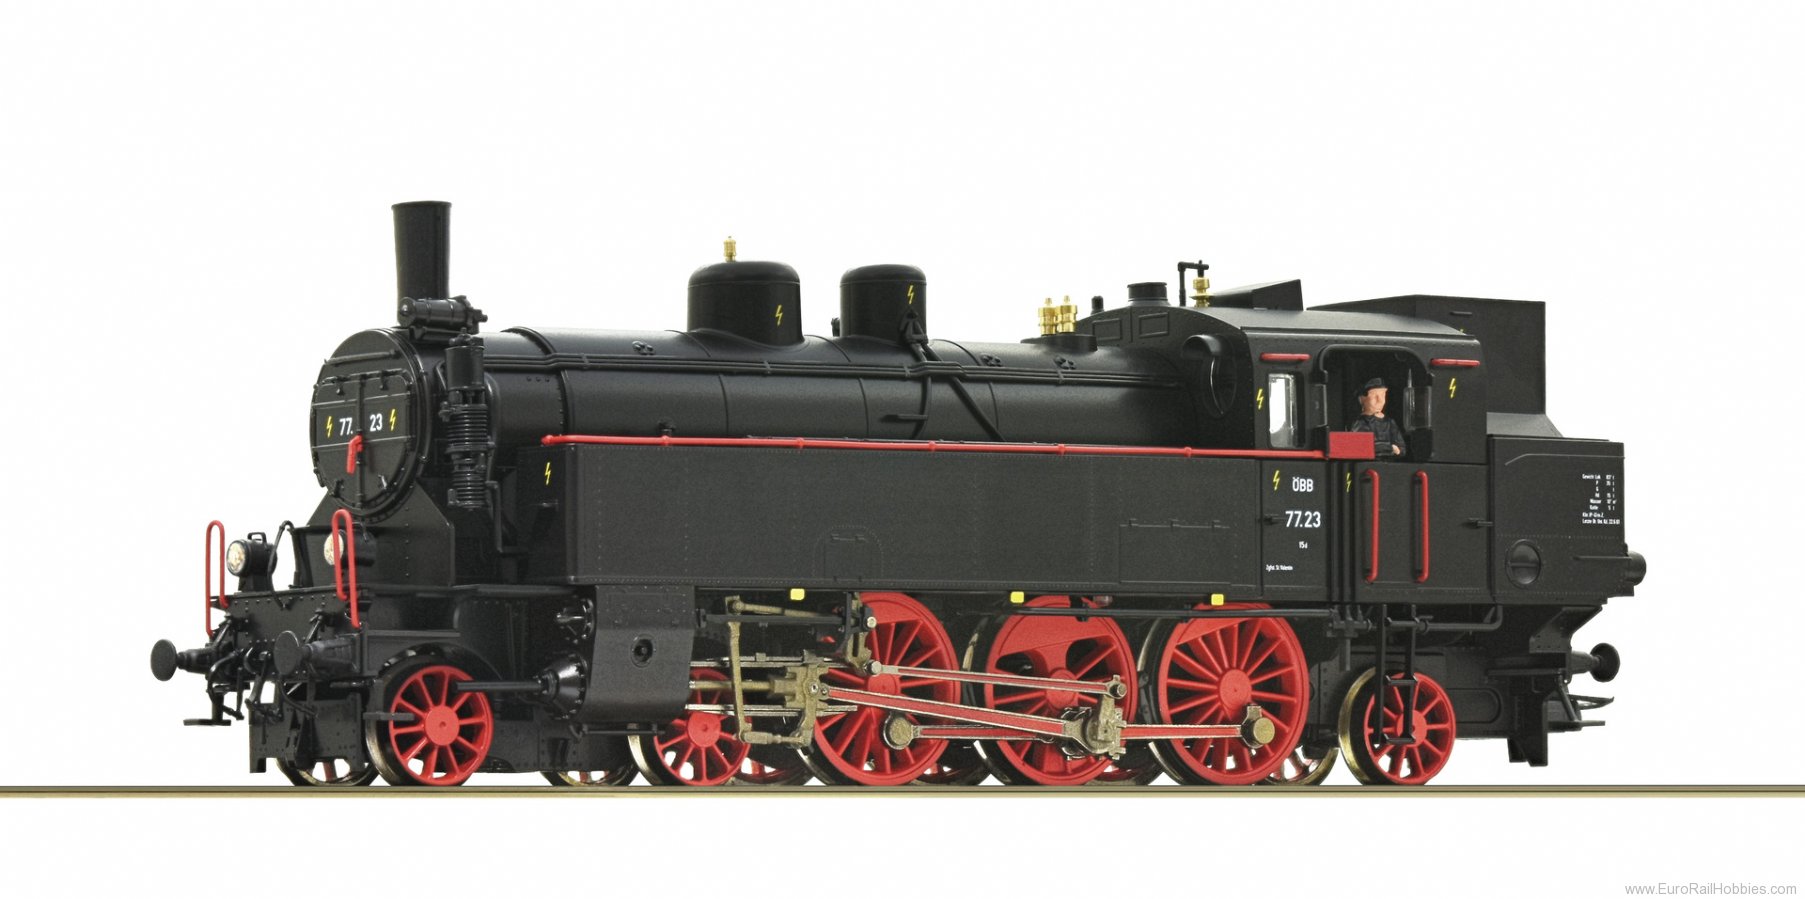 Roco 70075 OBB Steam locomotive 77.23,